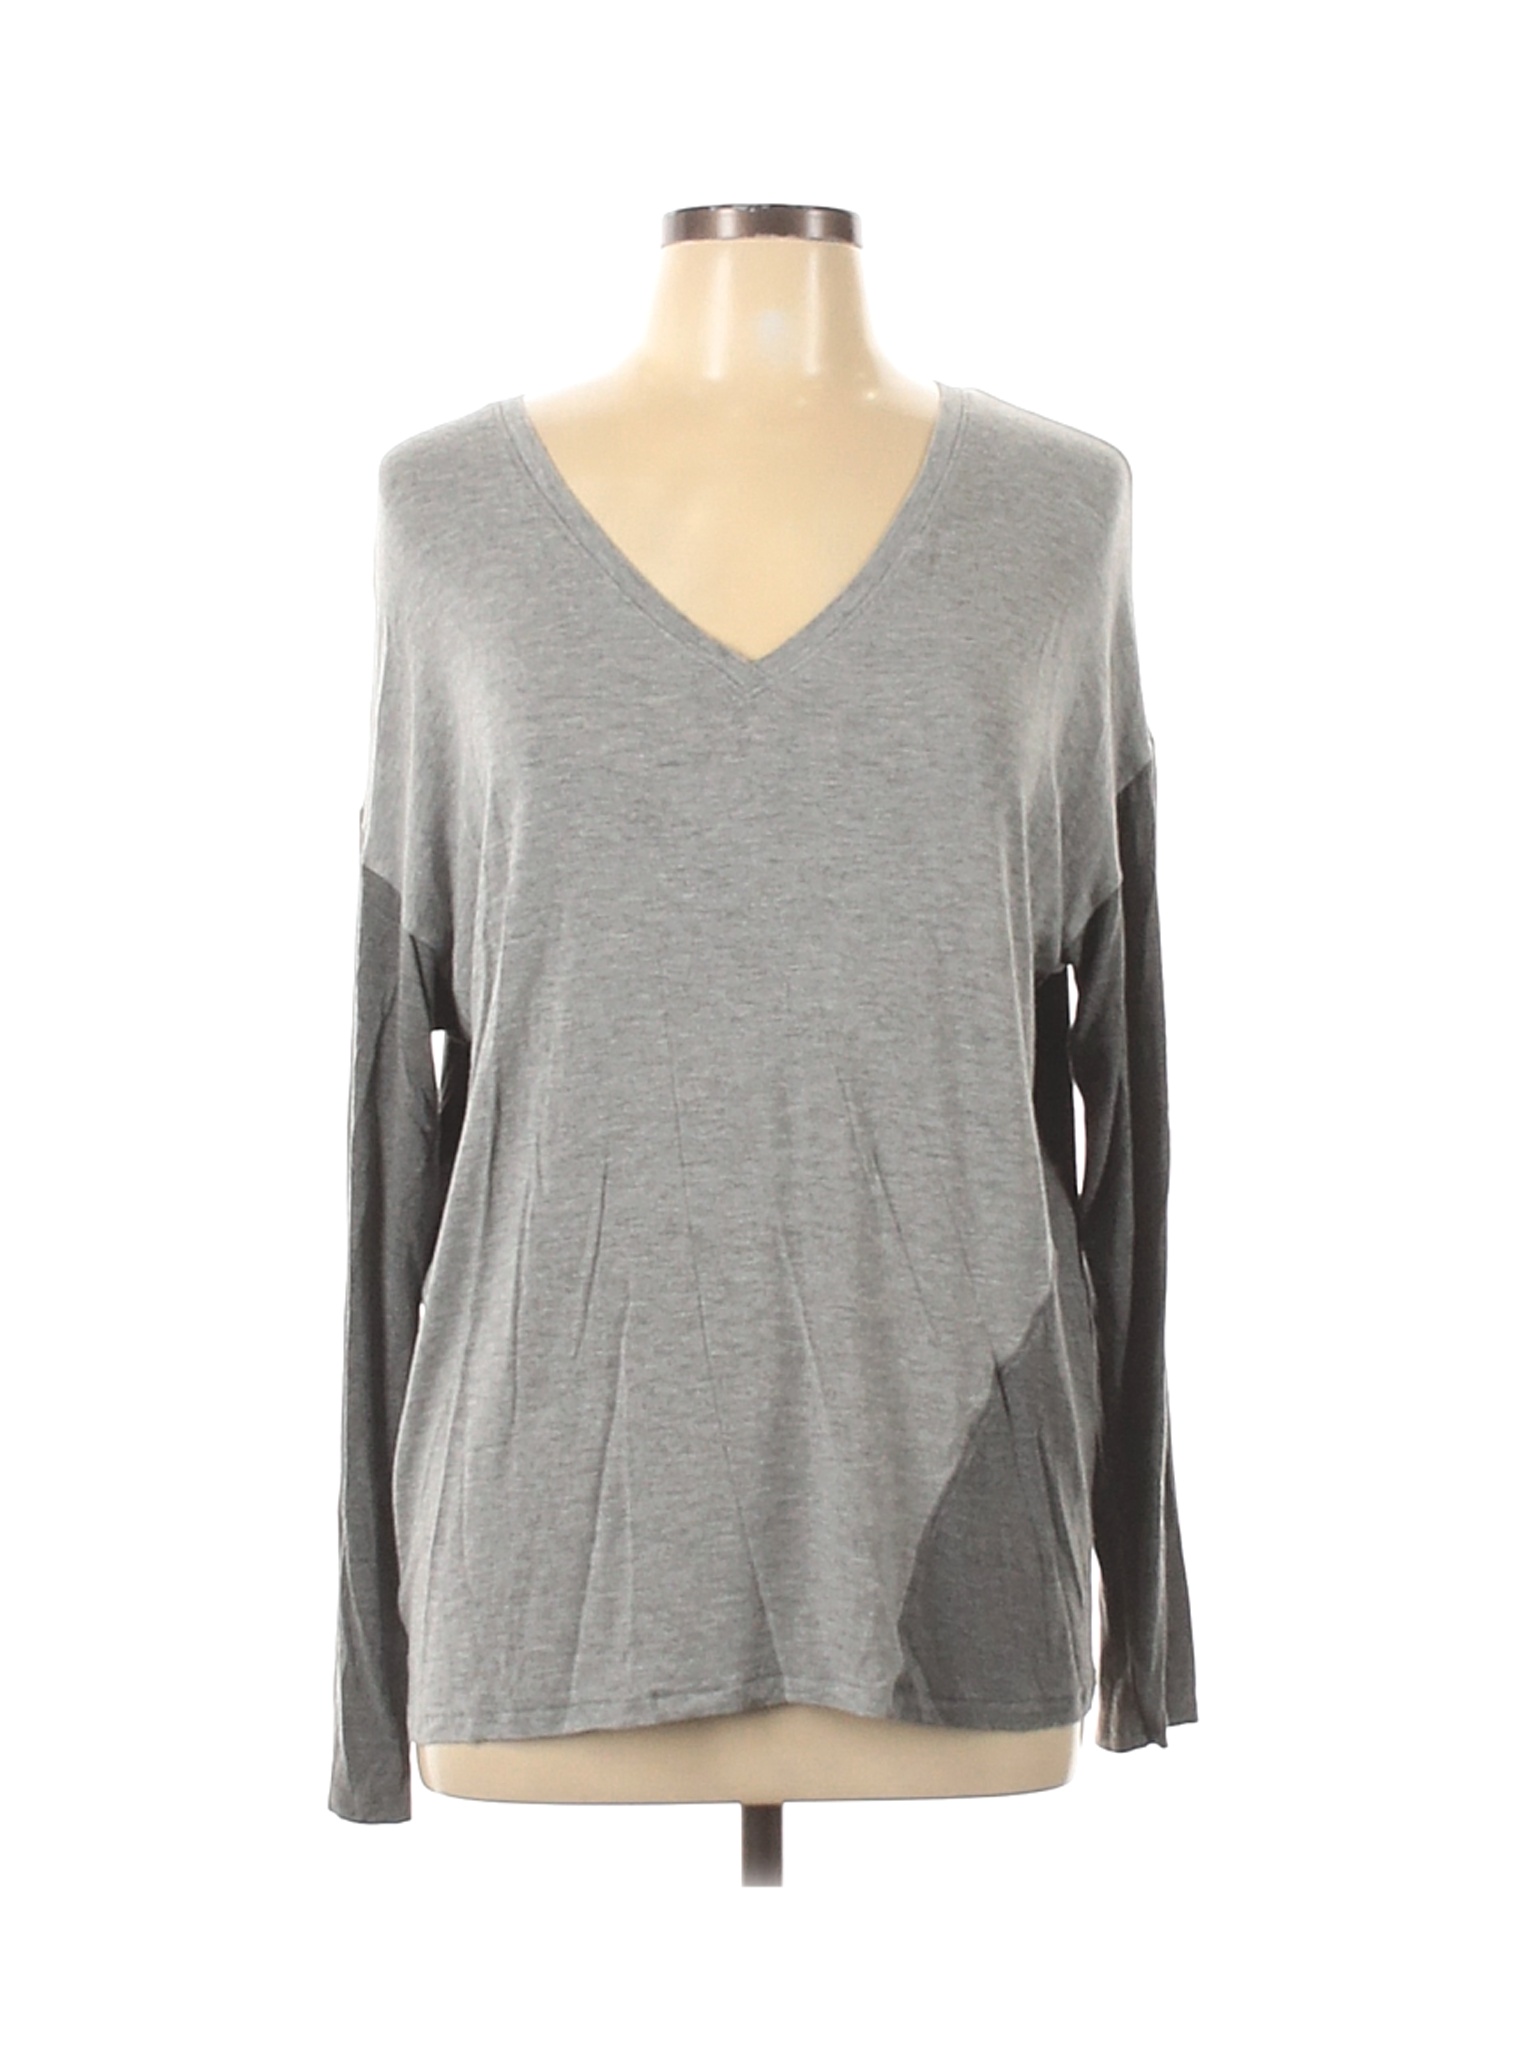 Tahari Women Gray Long Sleeve Top L | eBay